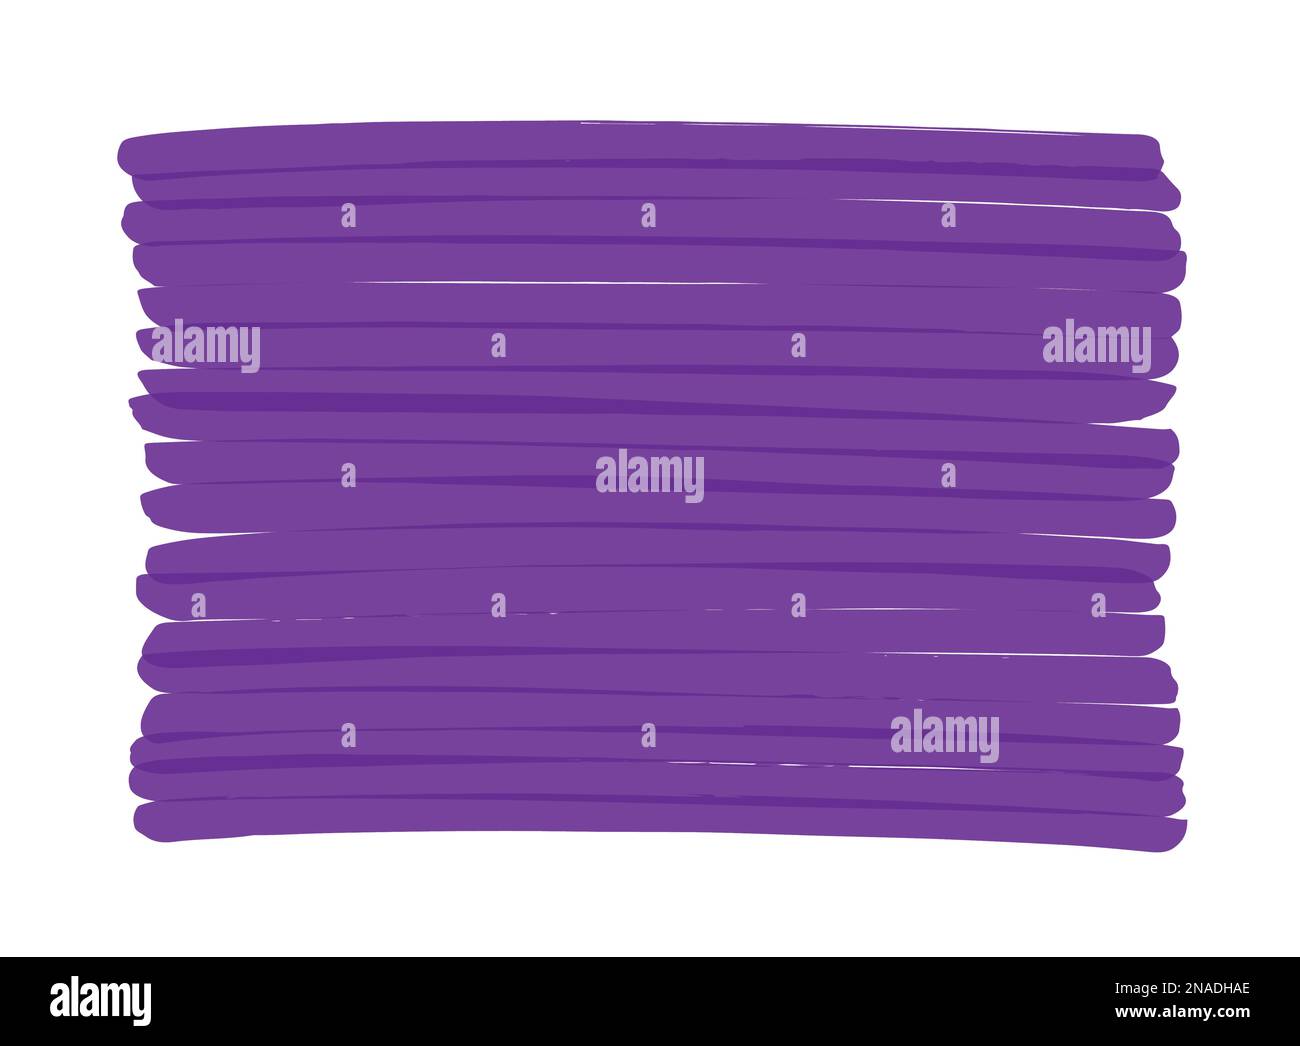 Sfondo vettoriale viola disegnato a mano con pennarello. Può essere riverniciata in qualsiasi altro colore. Le strisce che si sovrappongono creano punti più scuri. Illustrazione Vettoriale